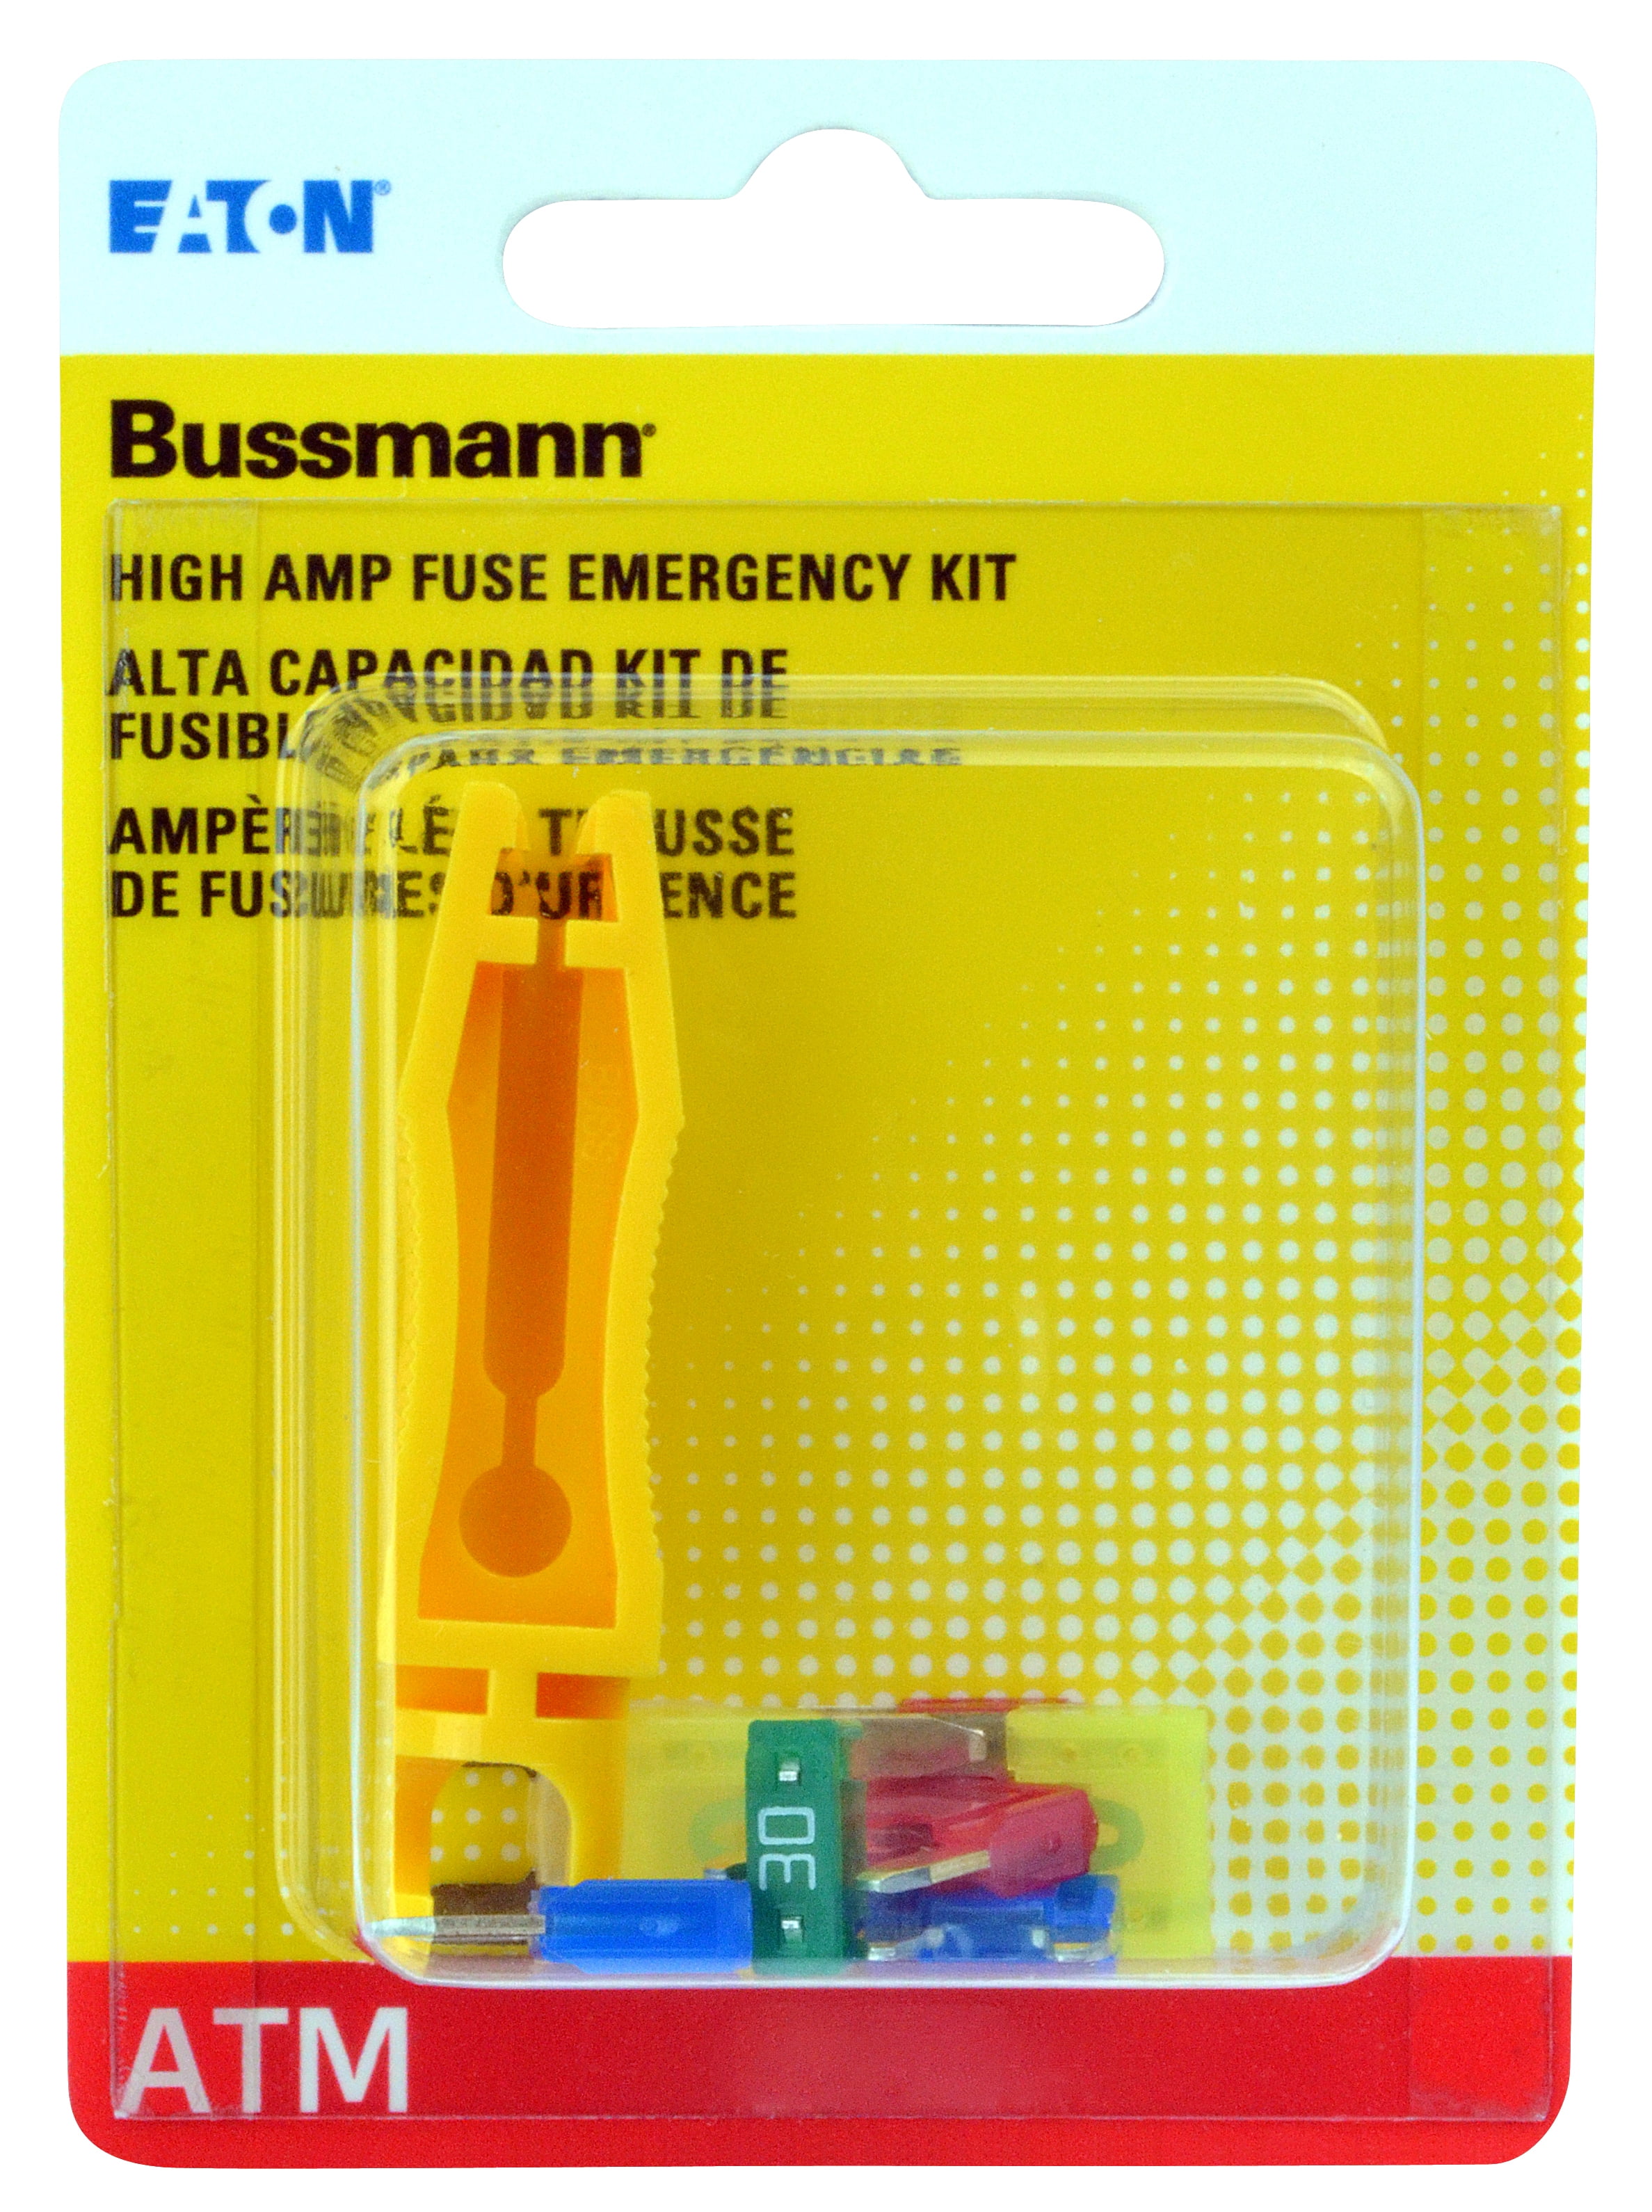 Atm-Fmx Emergency Kit Bussmann ATM-FMX-EK Automotive Fuse Assortments 